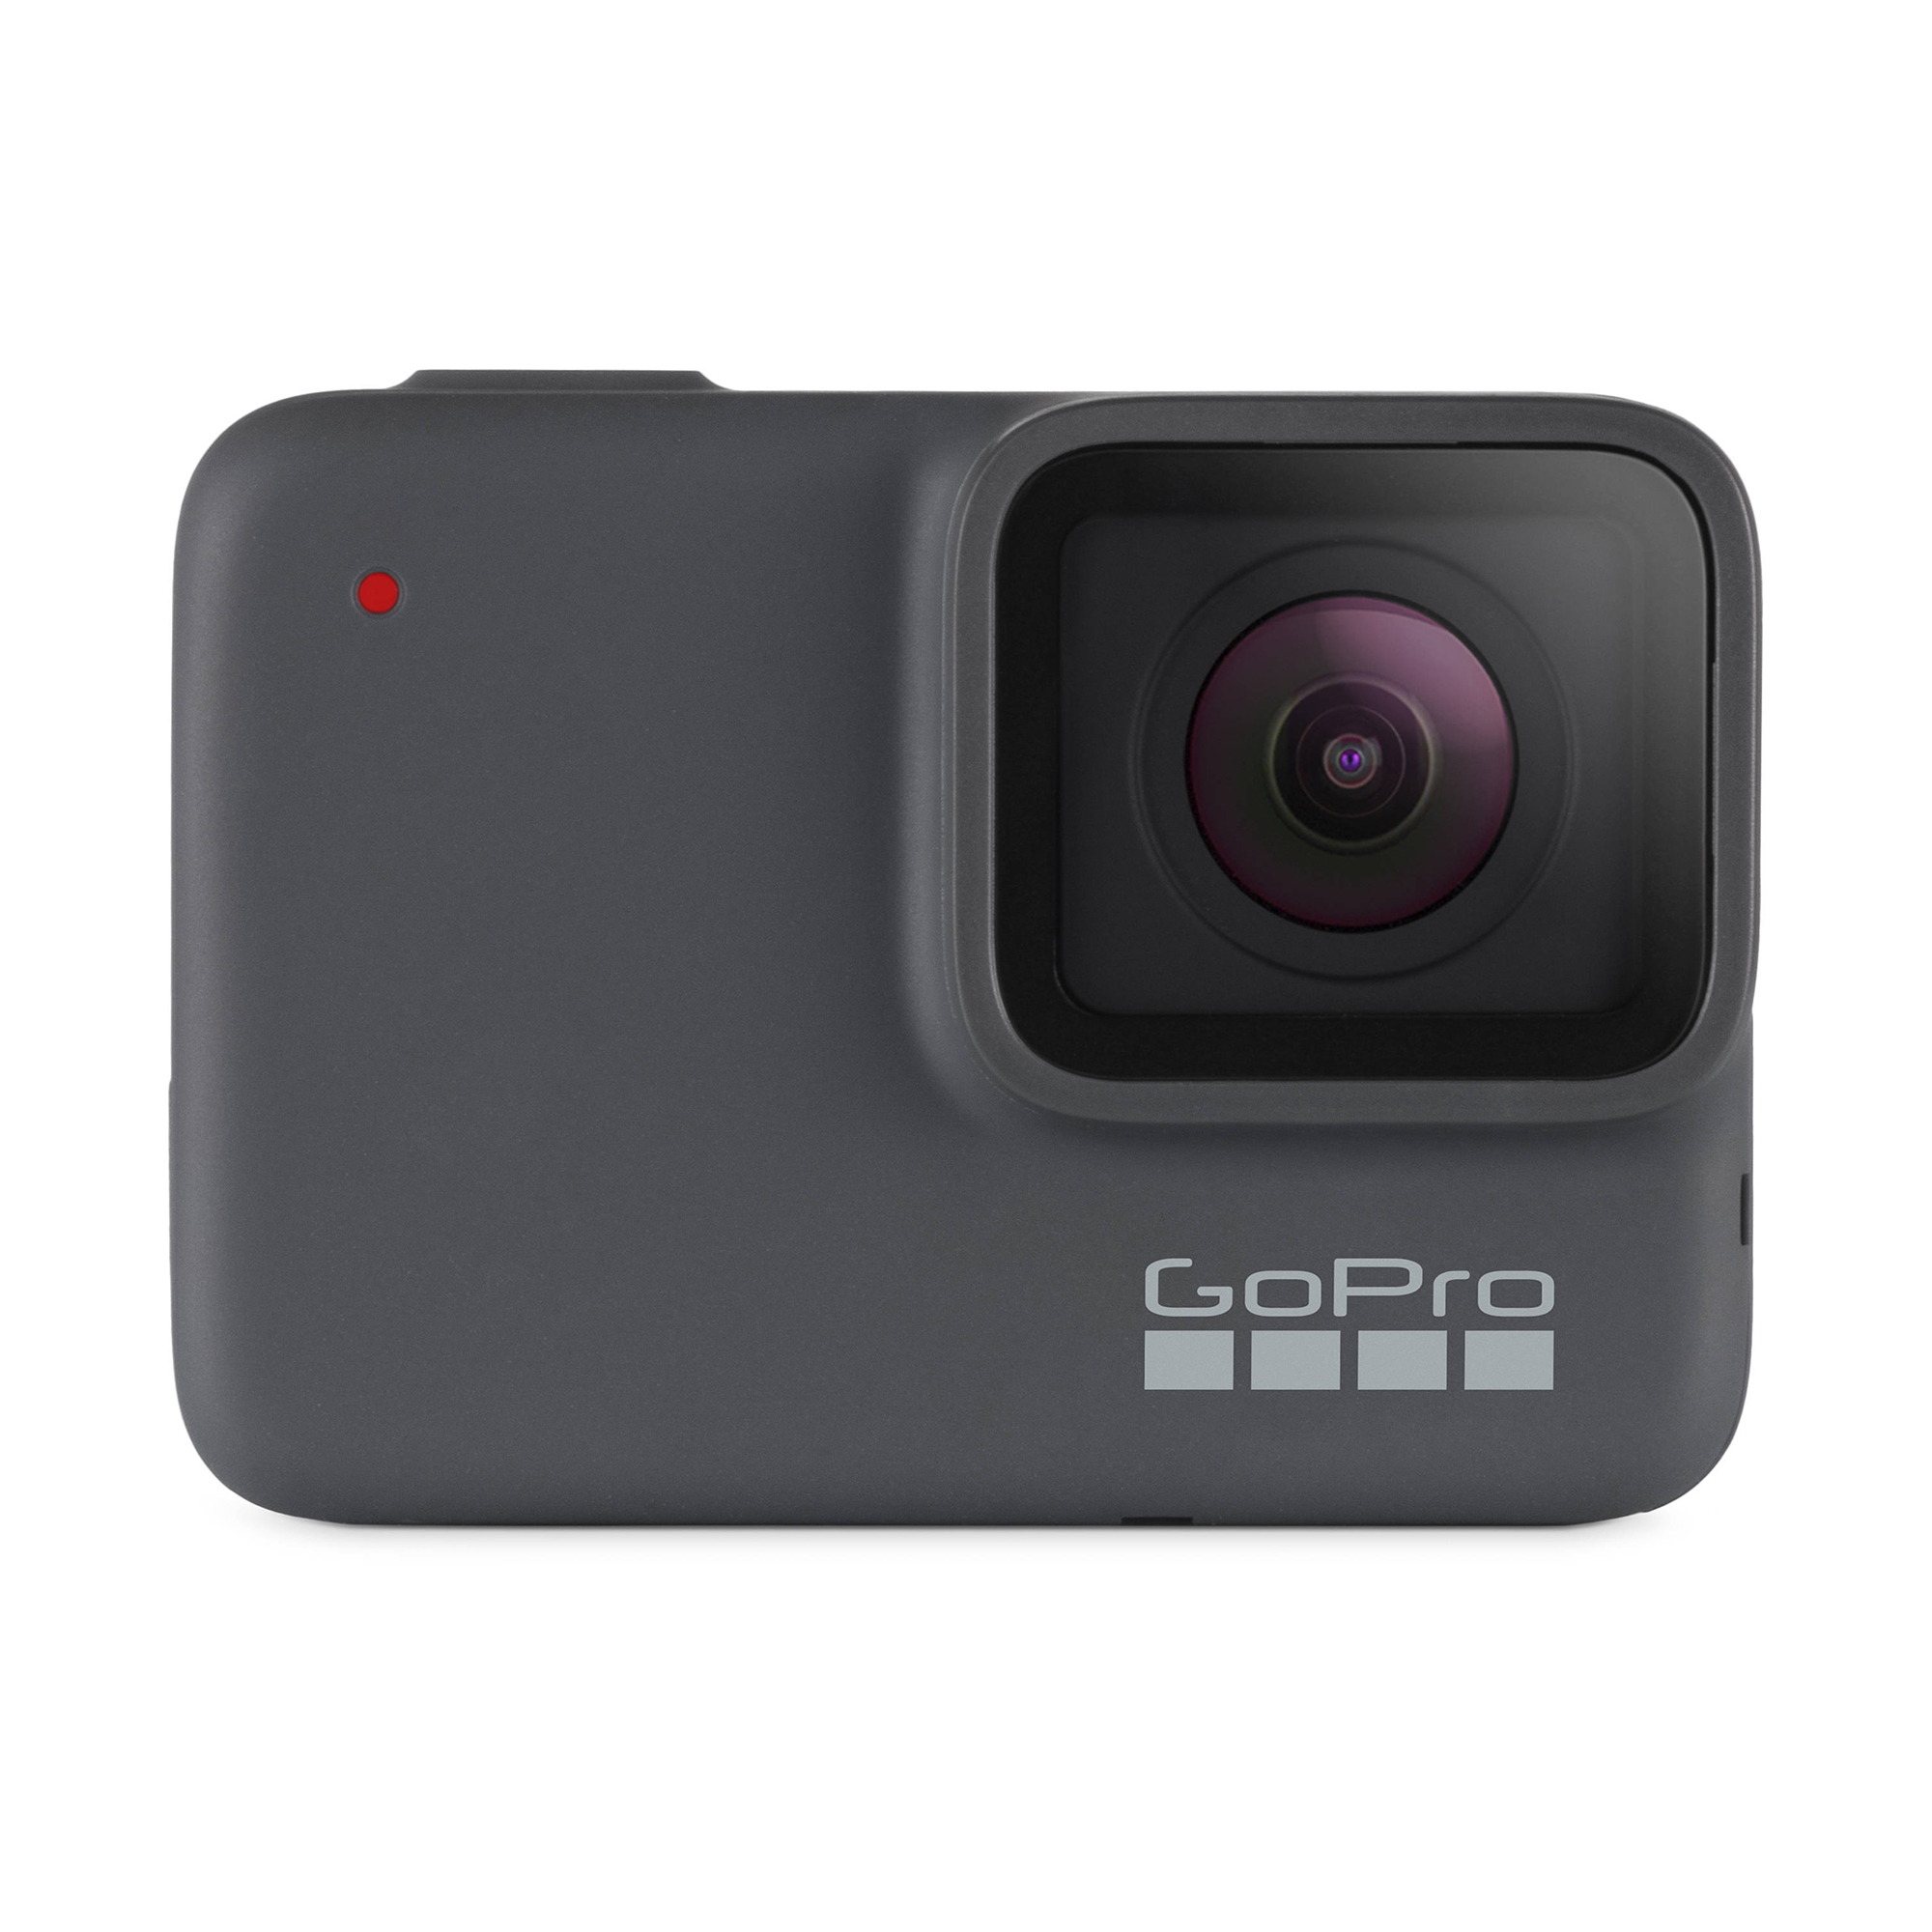 Kamera GoPro Hero7 Silver